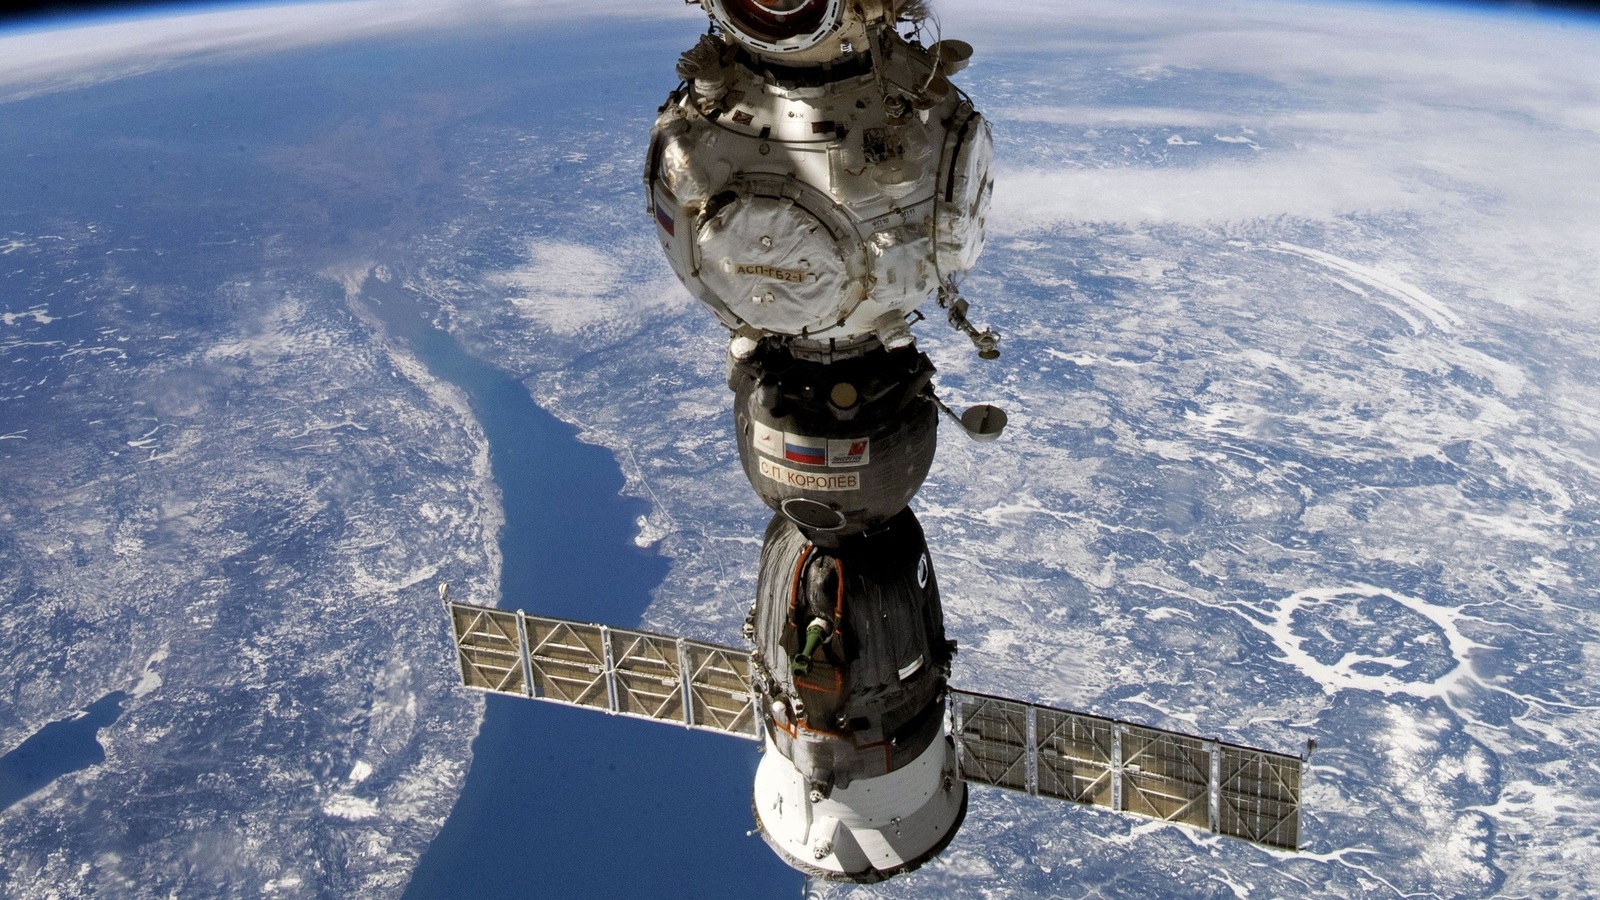 Глава российской космонавтики похвалил США после утечки теплоносителя с Международной космической станции